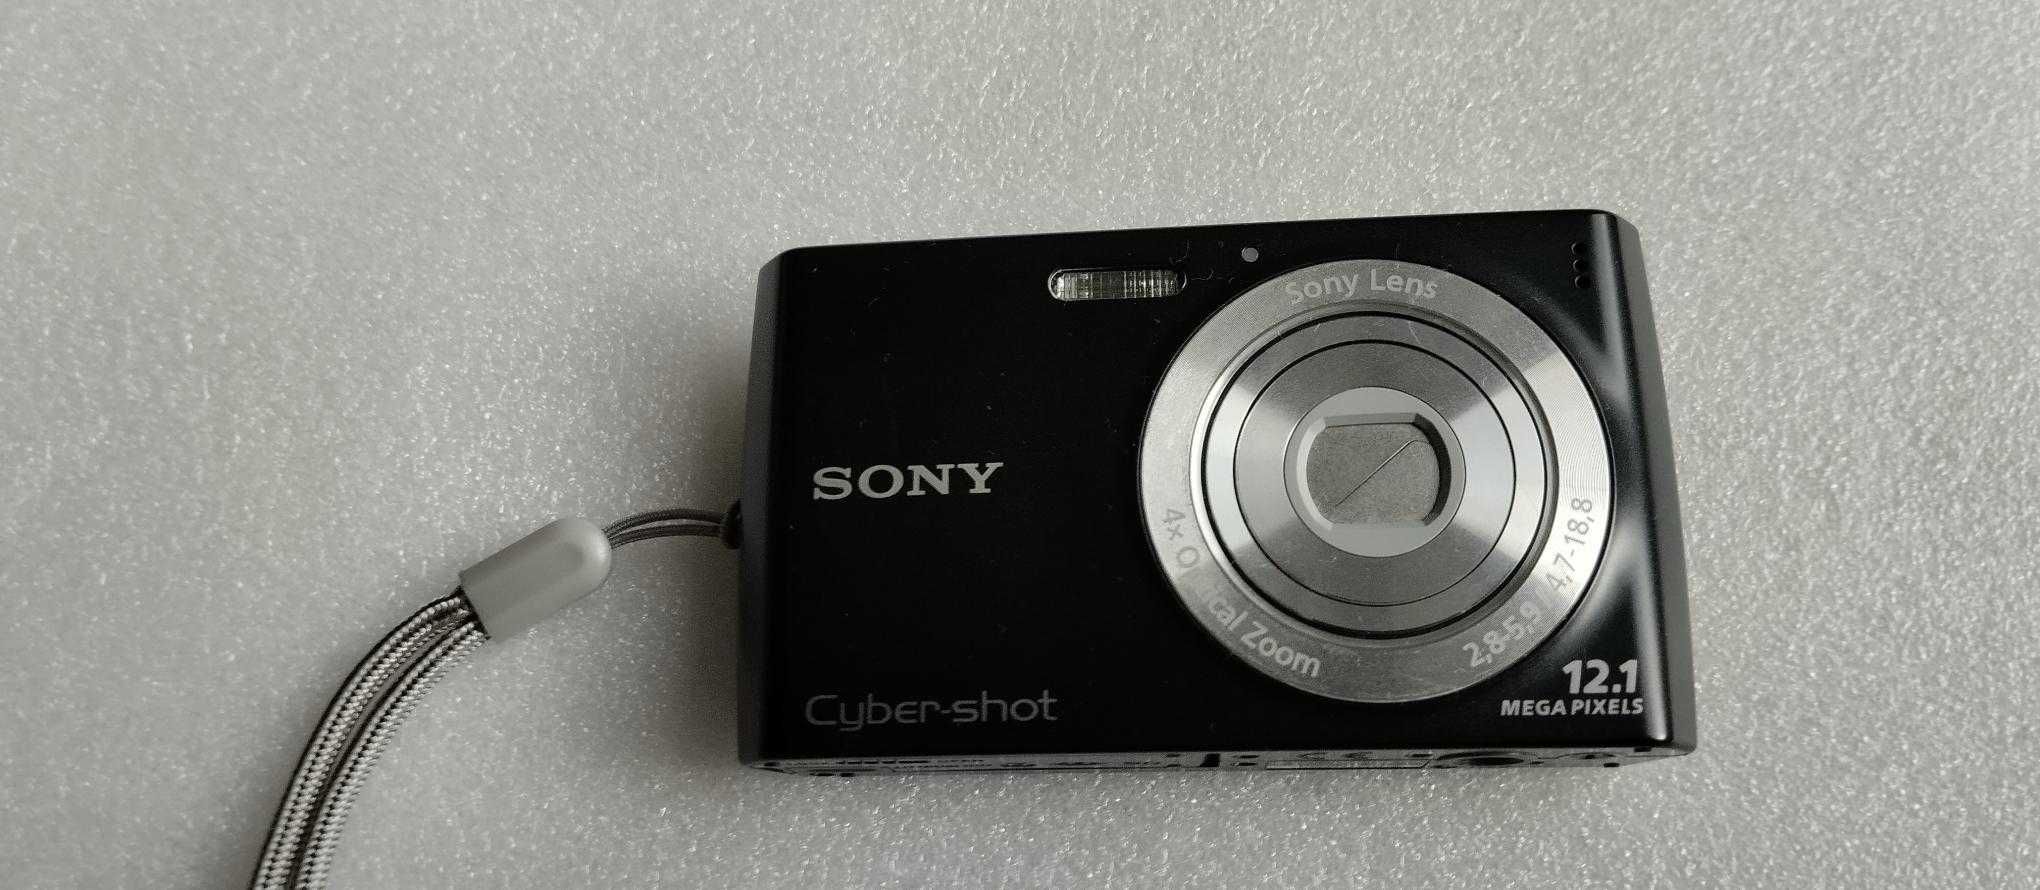 Sony Cybershot DSC W510